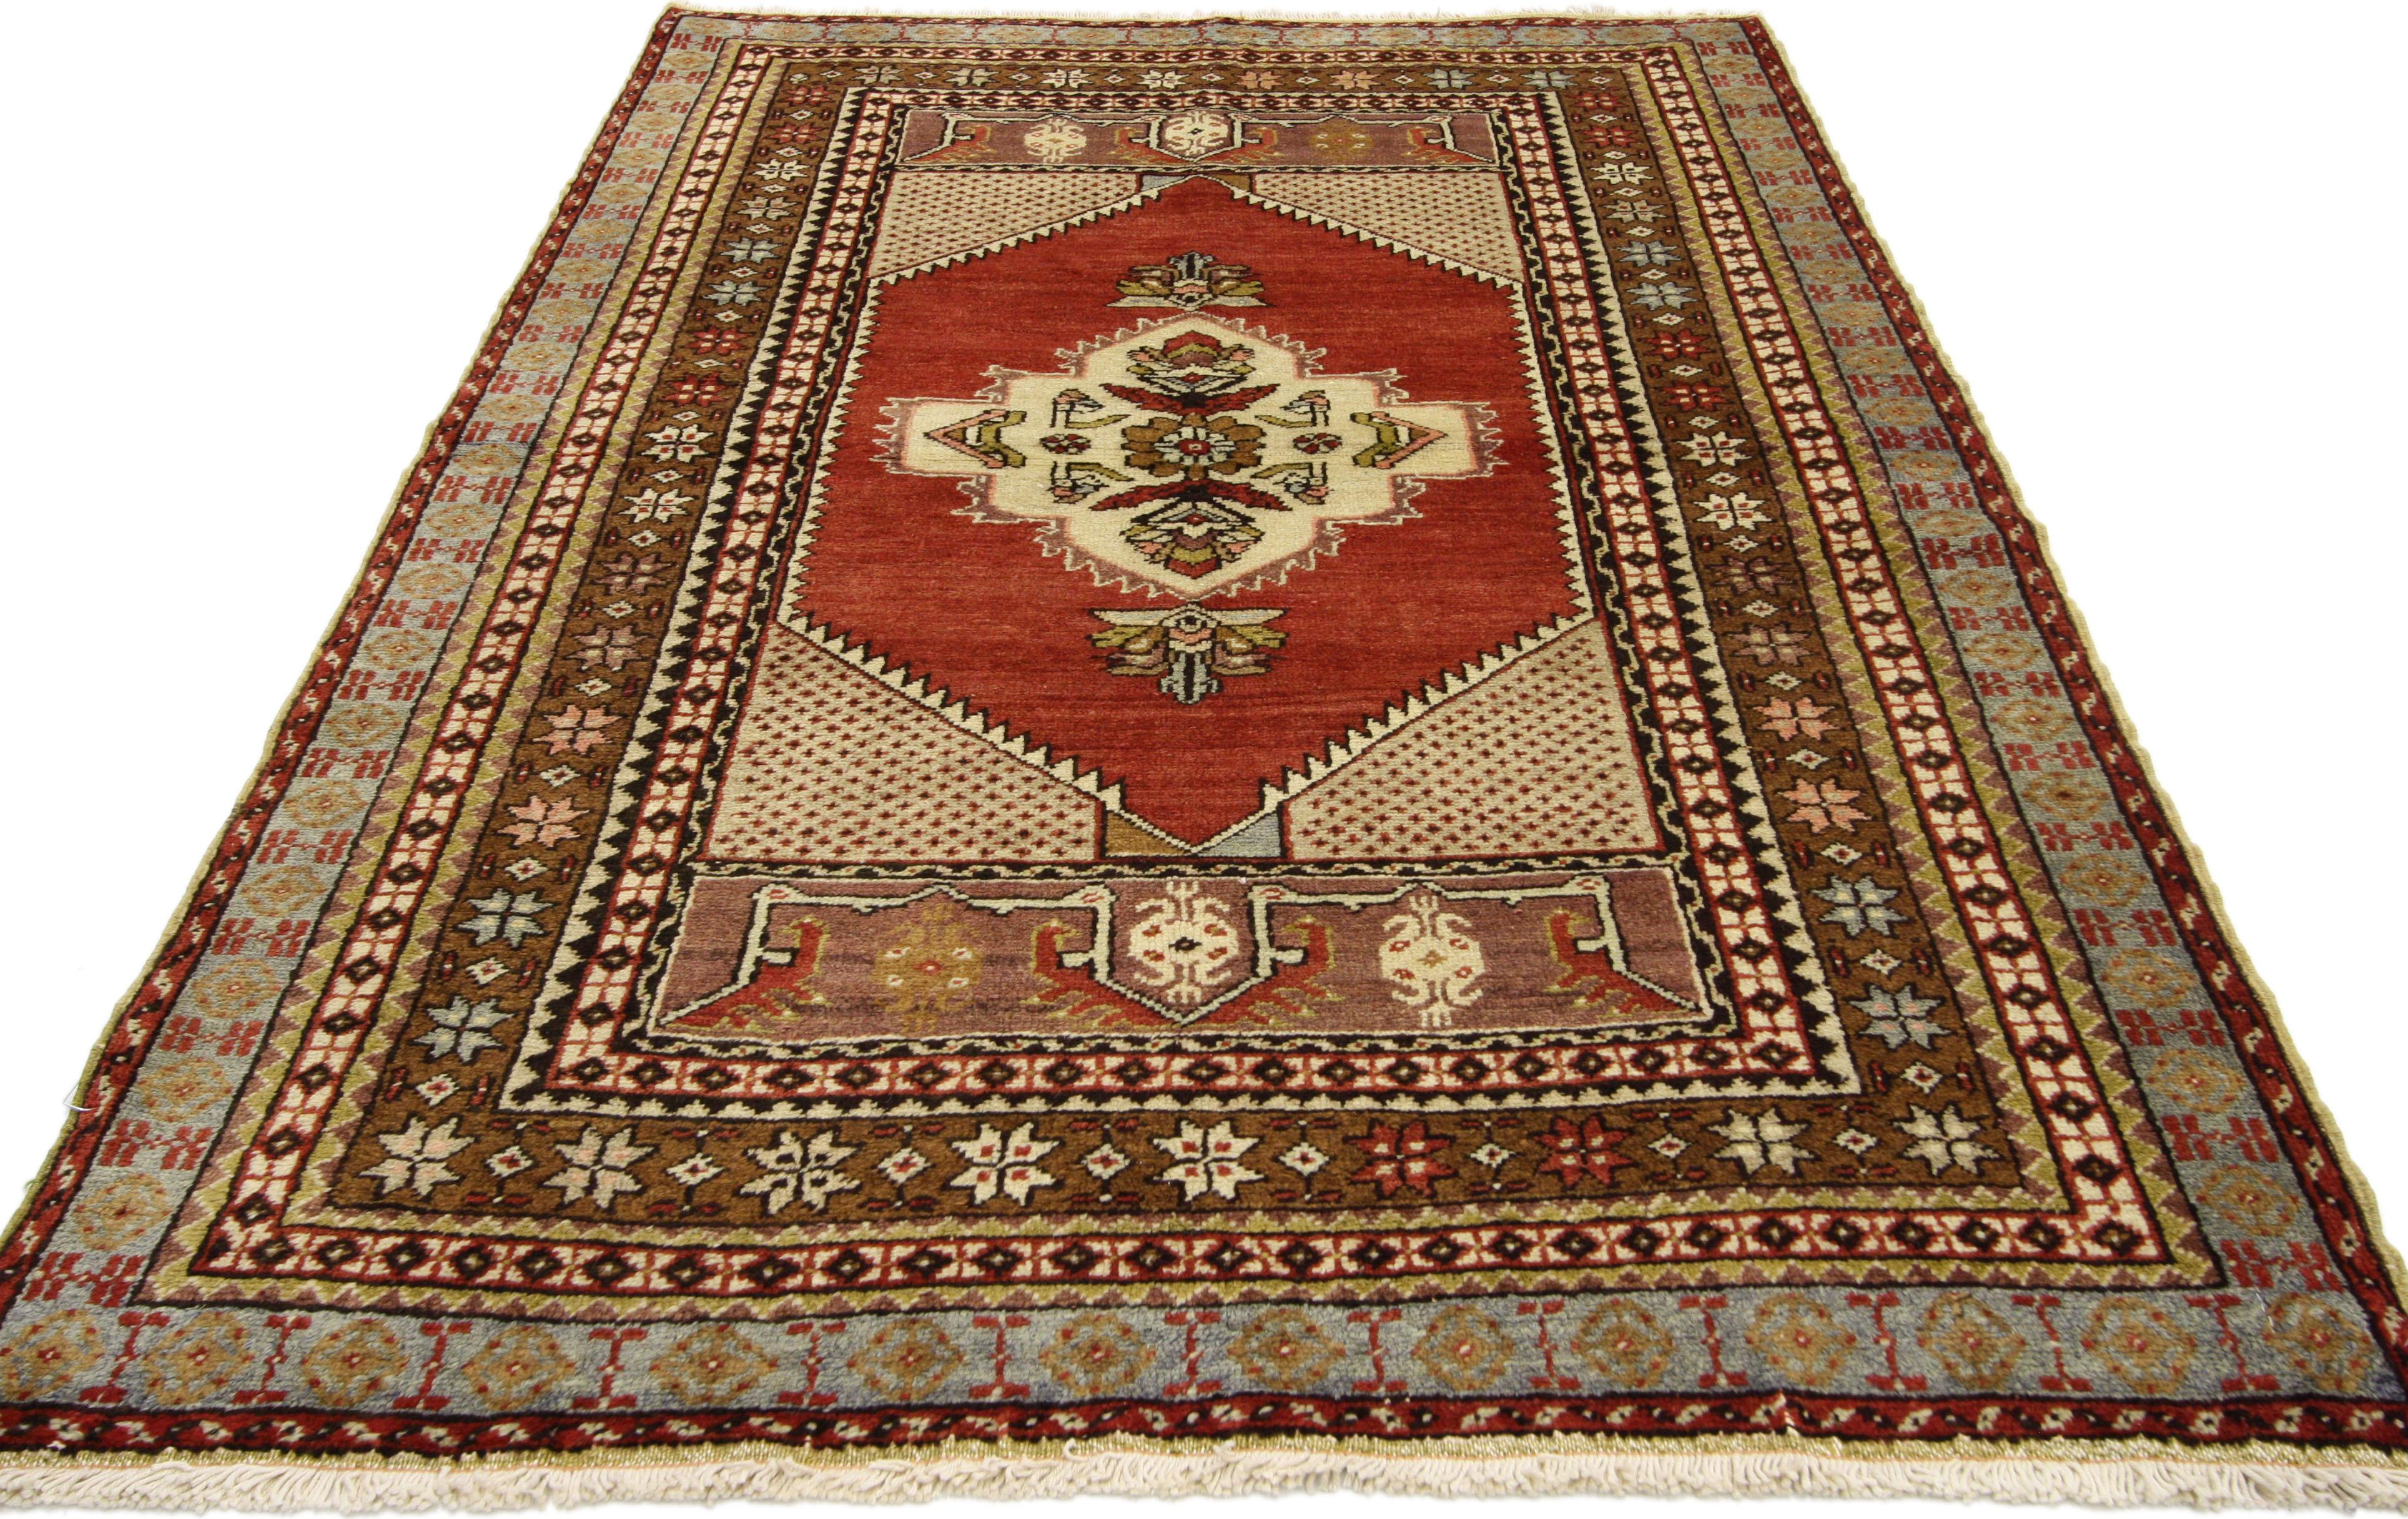 73848 Vieux tapis turc Oushak, tapis d'entrée ou de foyer 03.09 X 05.10. Ce tapis turc Oushak vintage présente un style moderne et traditionnel. Imprégné de l'histoire de l'Anatolie et de couleurs raffinées, ce tapis vintage turc Oushak allie